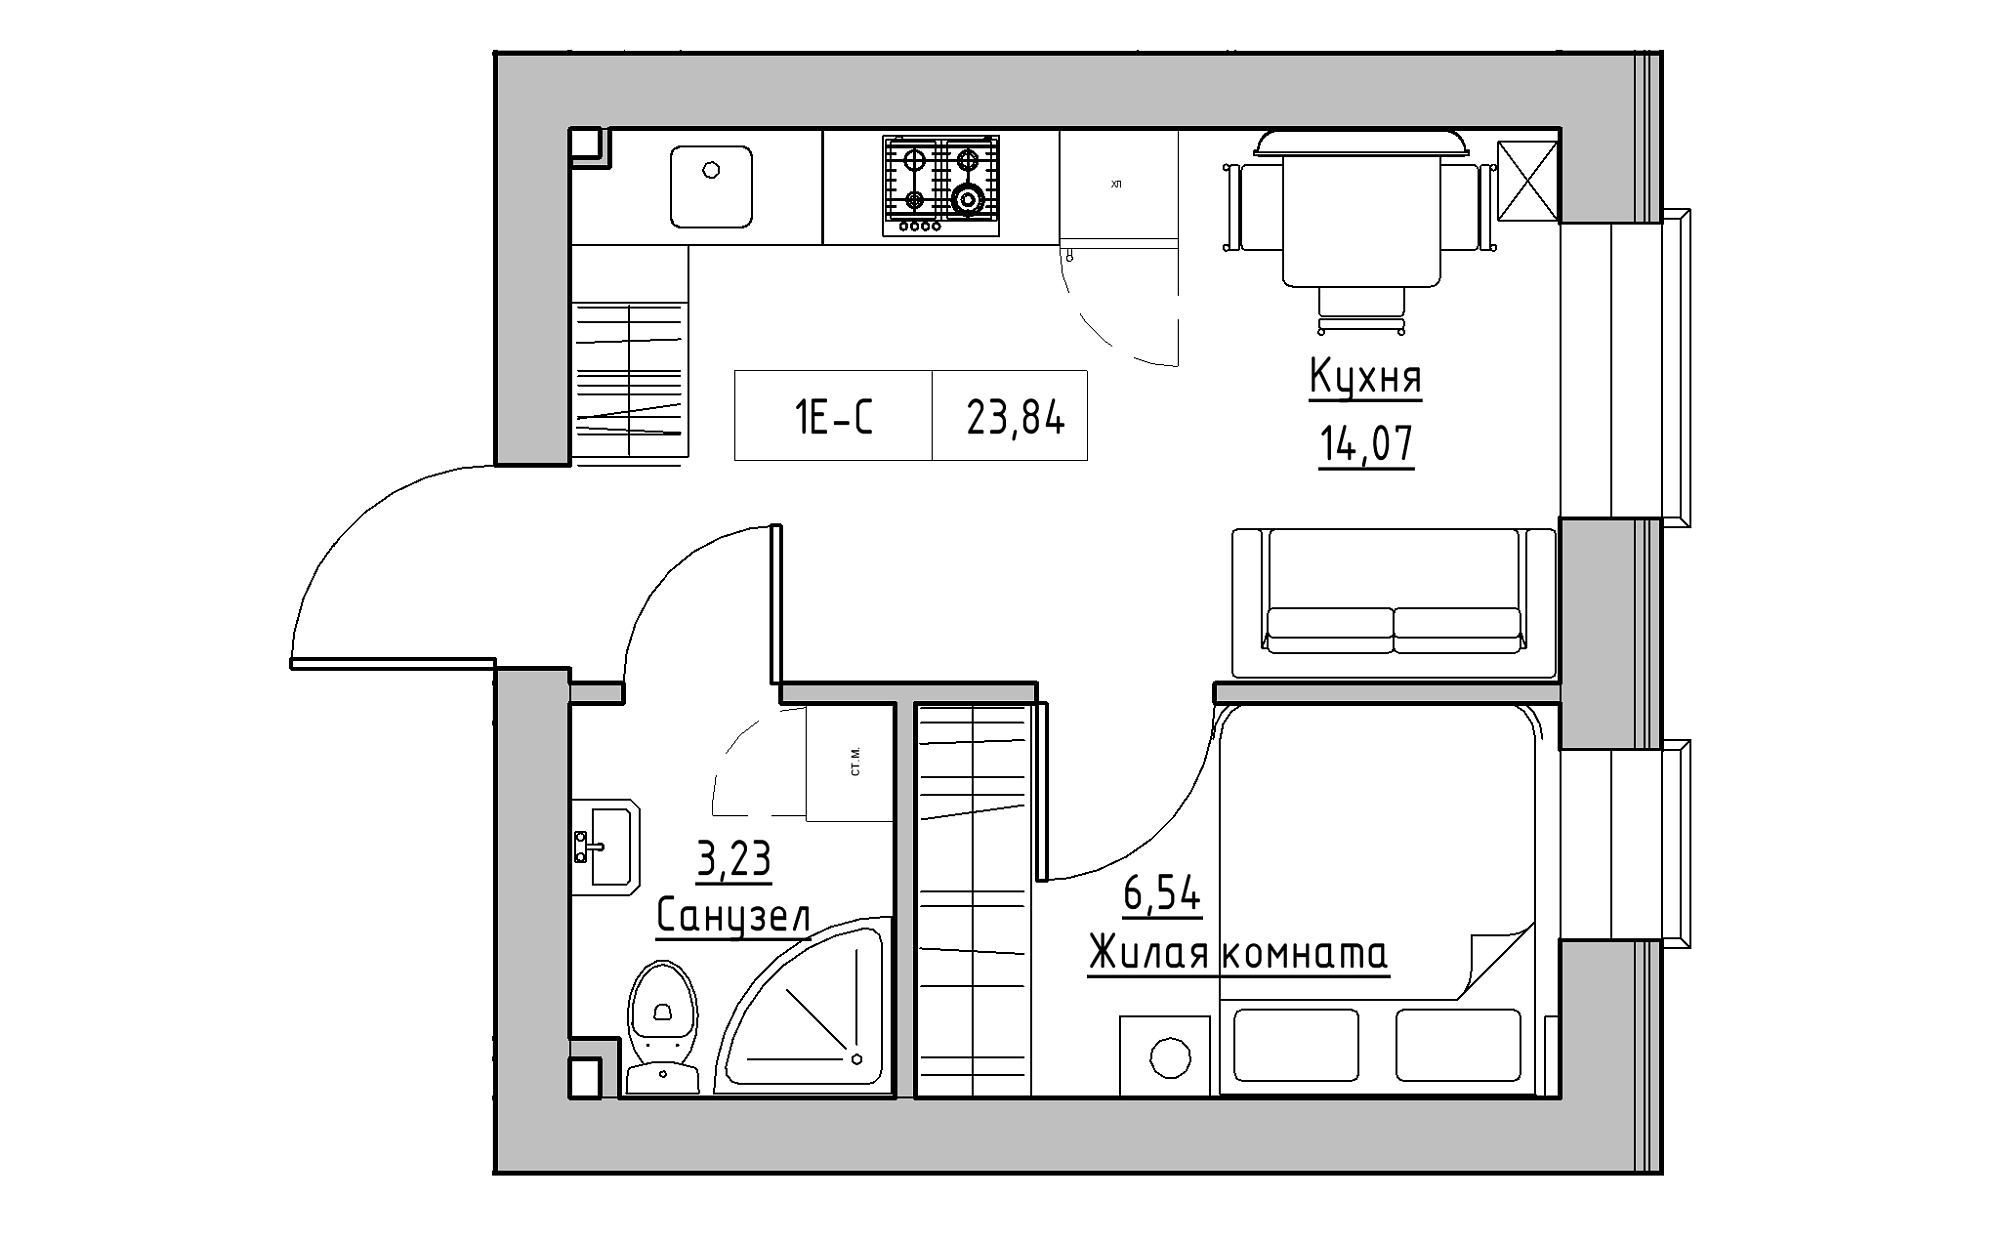 Планировка 1-к квартира площей 23.84м2, KS-022-03/0011.